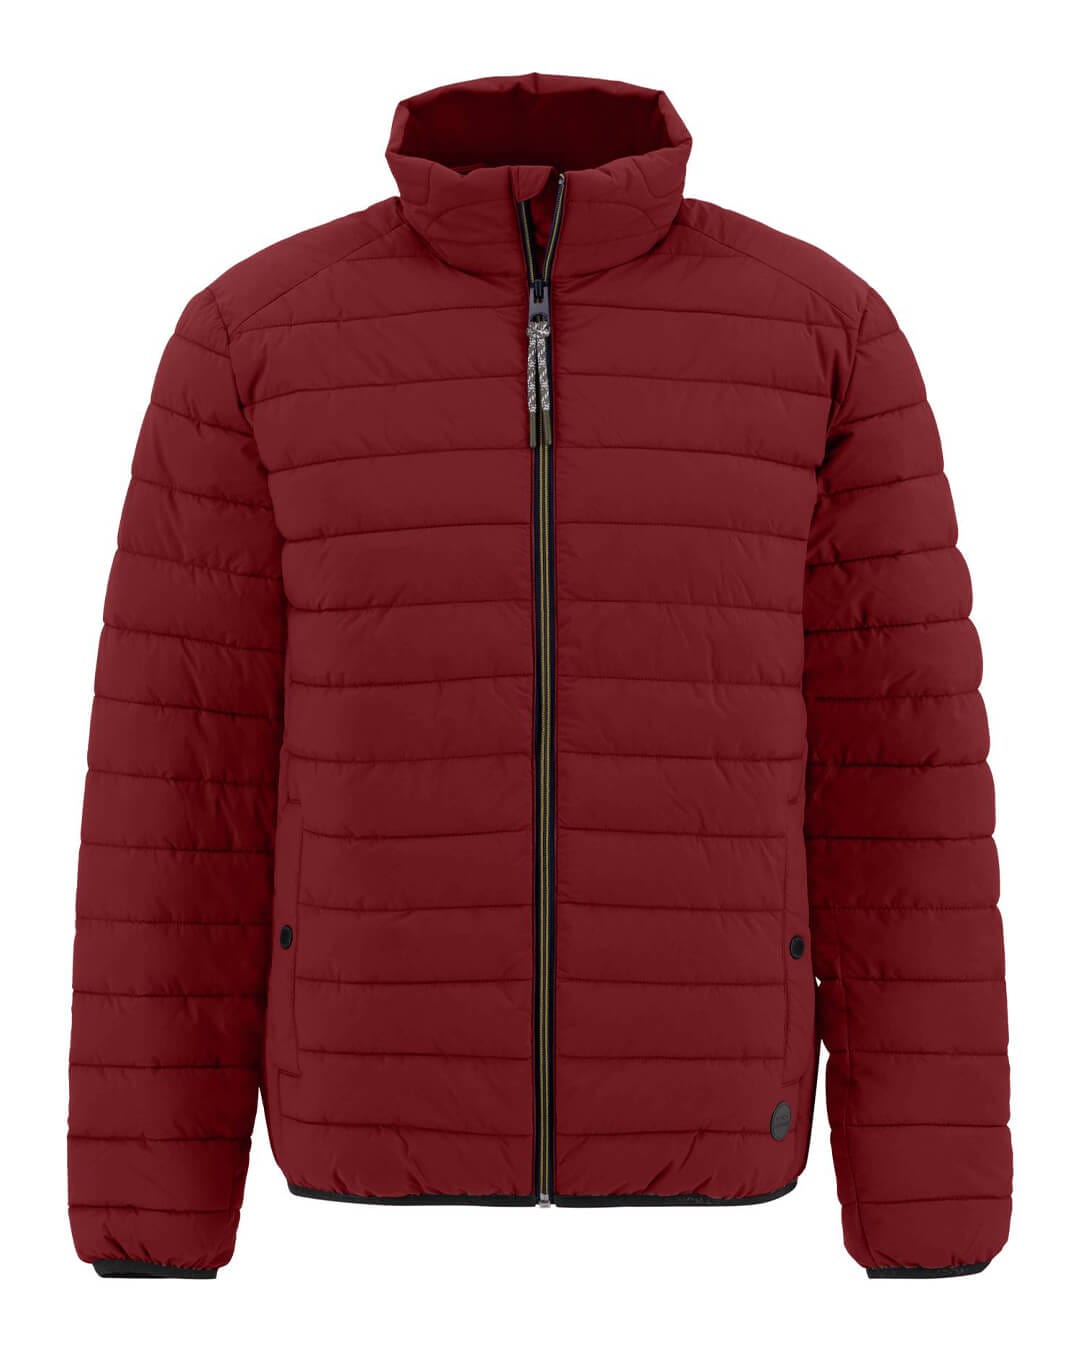 Fynch-Hatton Outerwear Fynch-Hatton Red Basic Light Weight Jacket